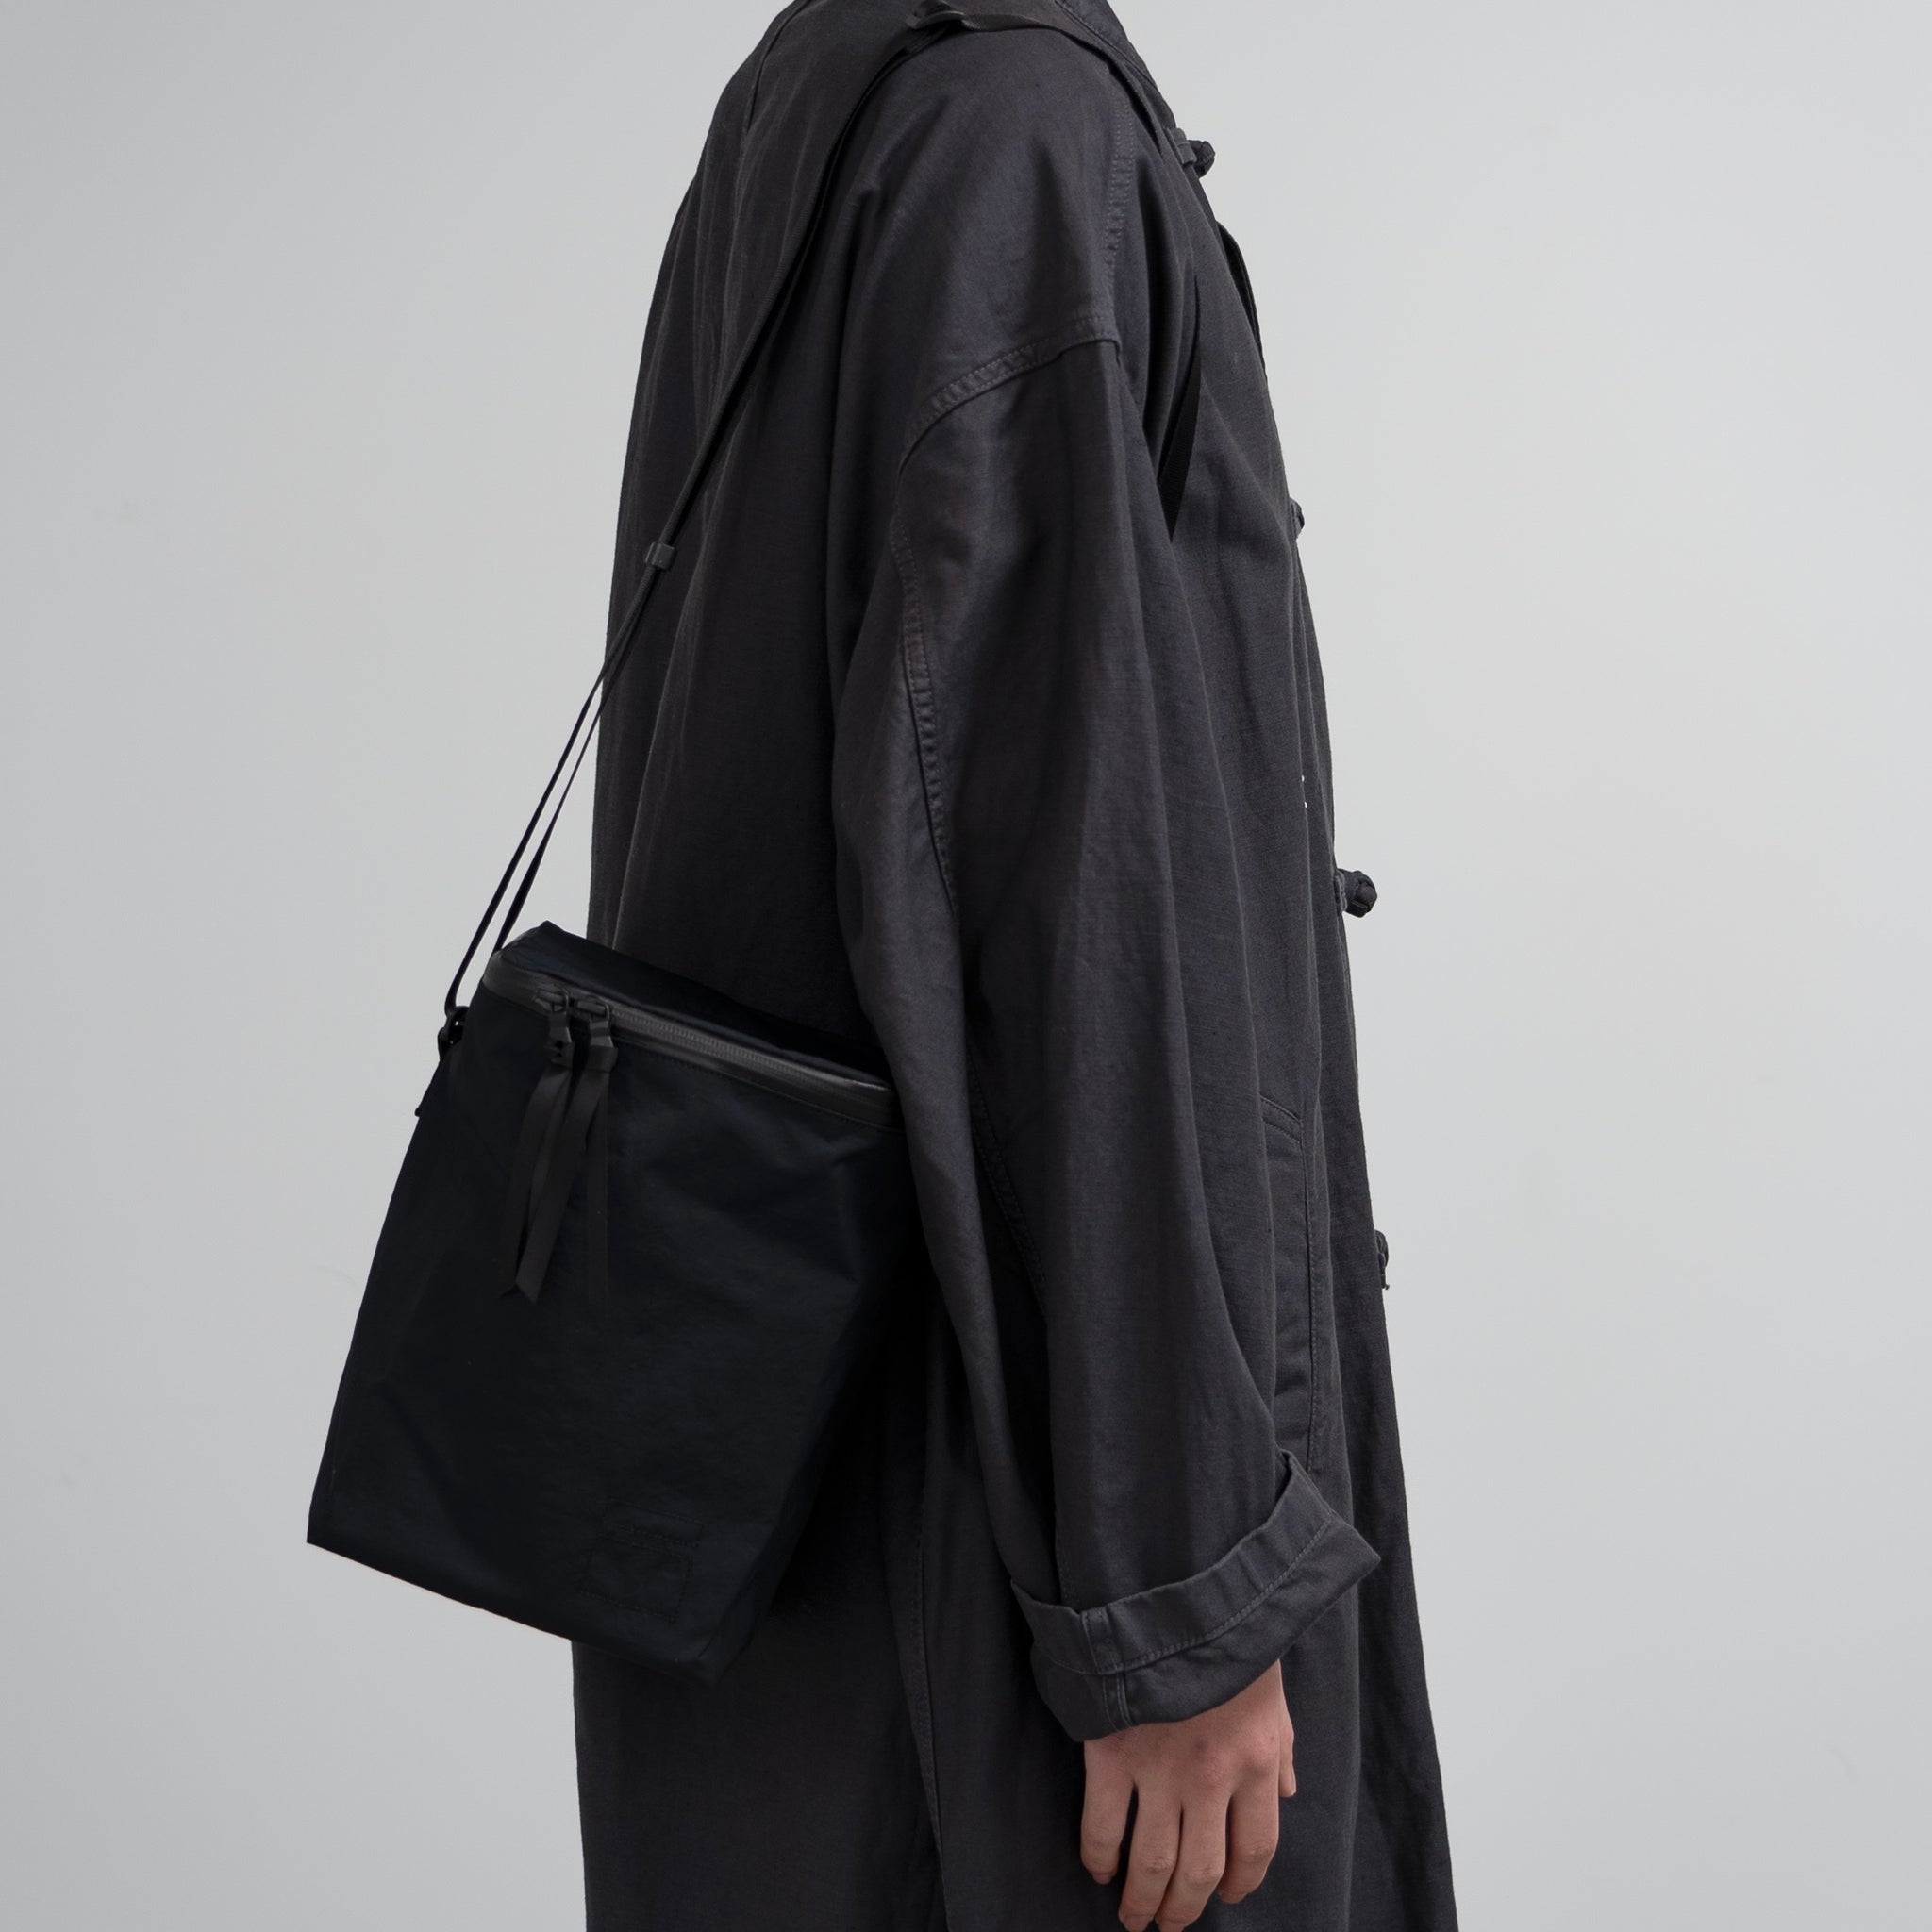 Blankof for Graphpaper Shoulder Bag ”SQUARE”